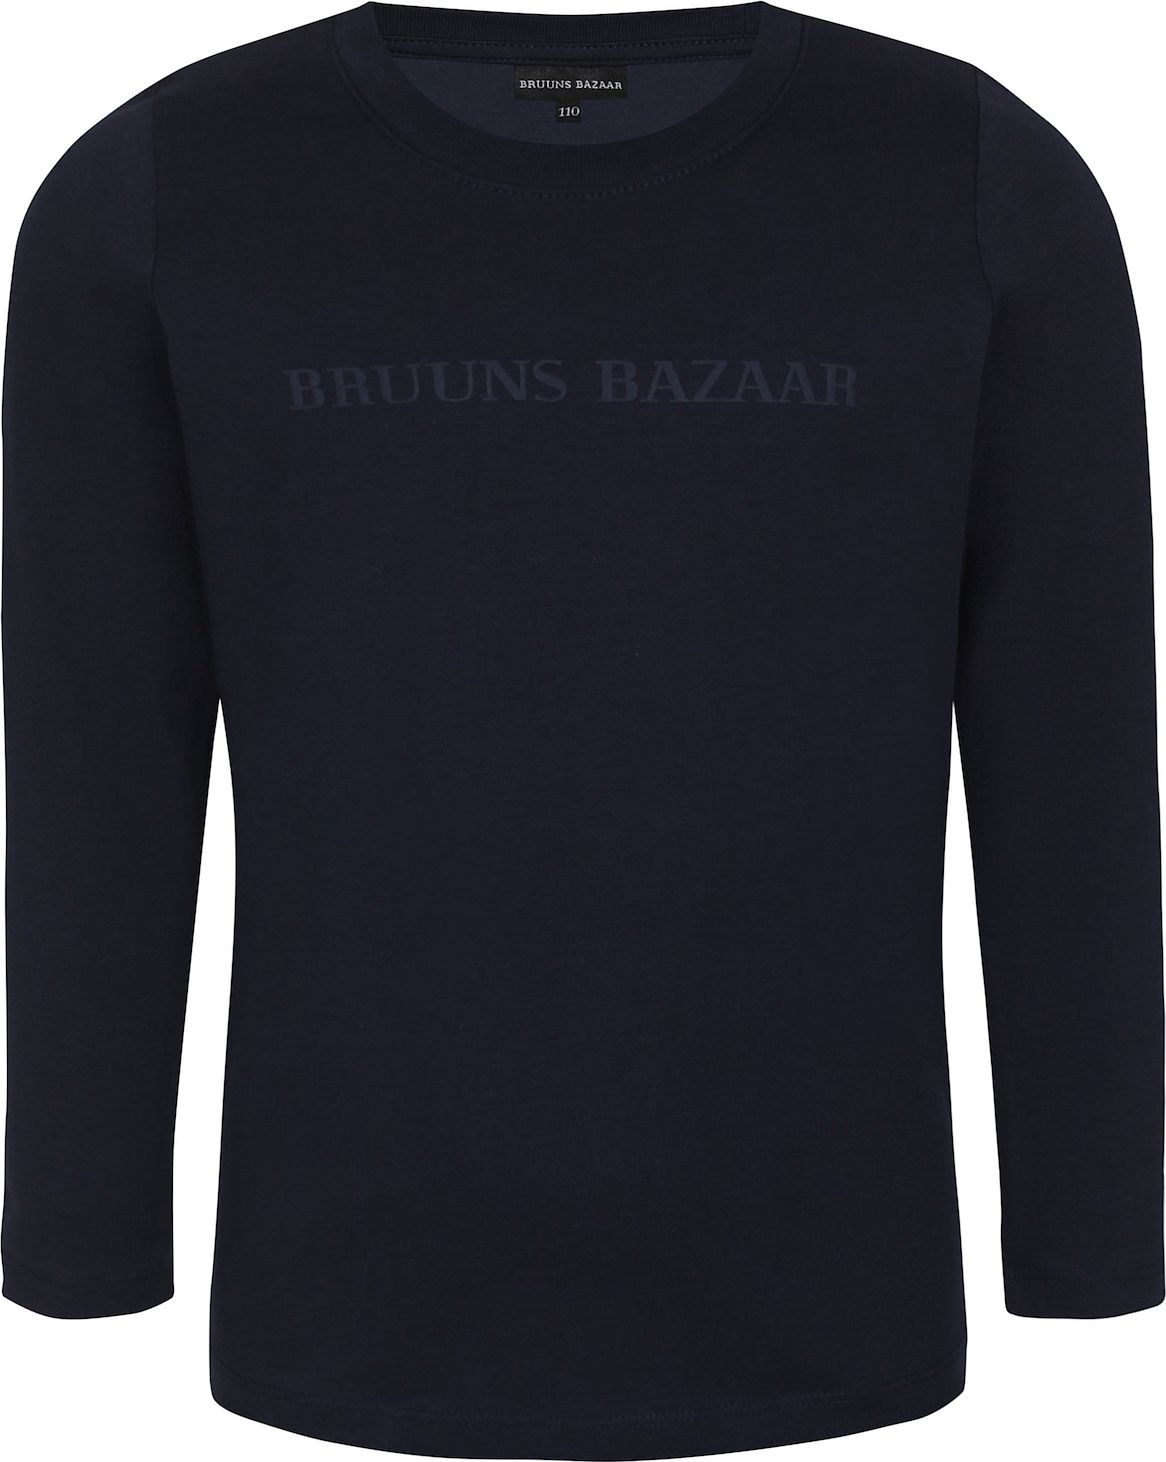 Bruuns Bazaar Kids Tričko námořnická modř / marine modrá